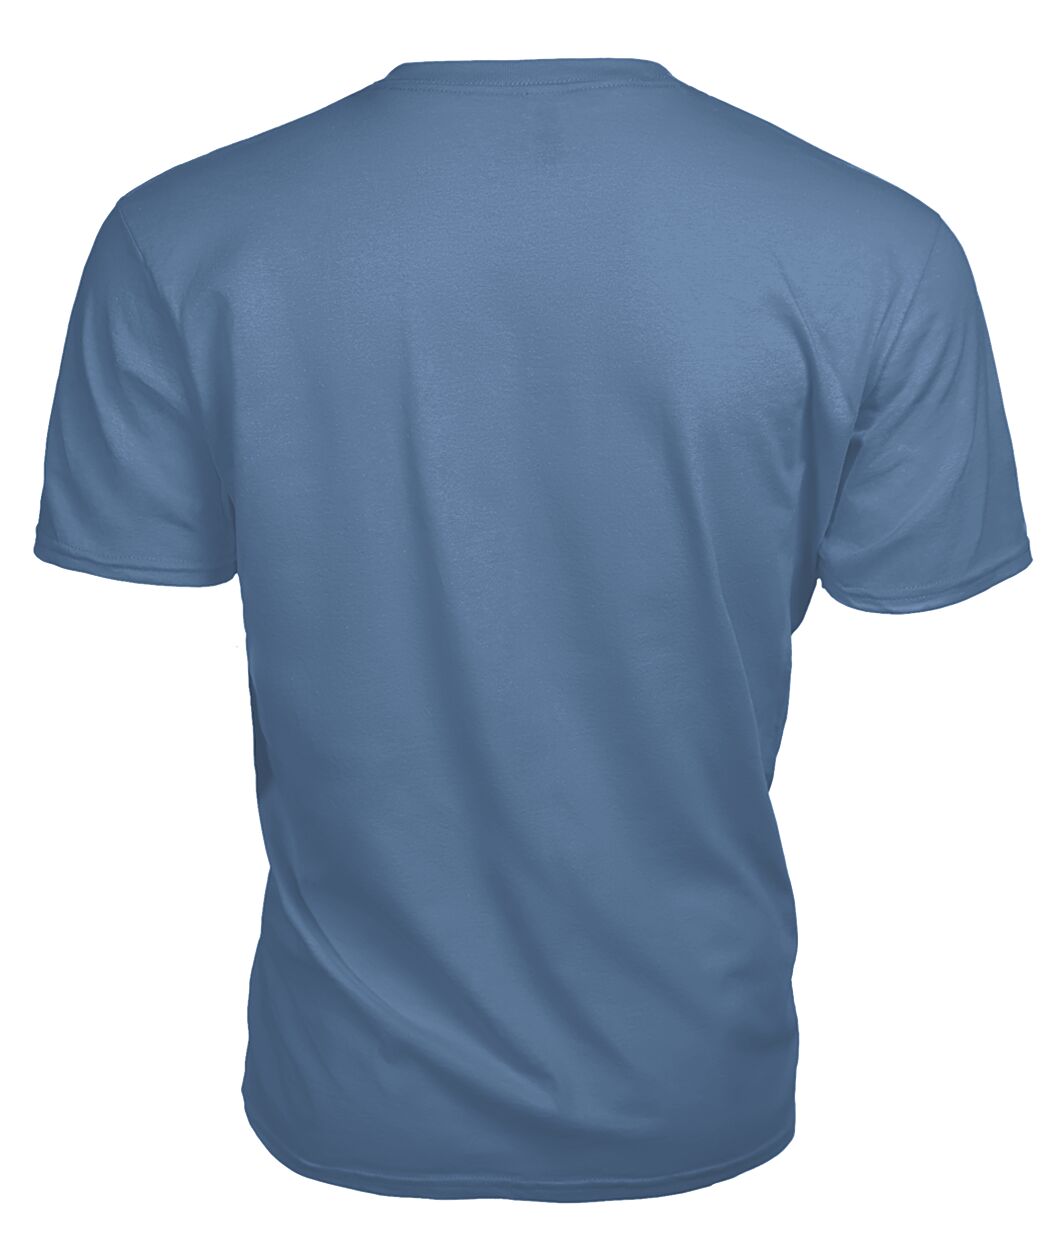 Middleton Family Tartan - 2D T-shirt